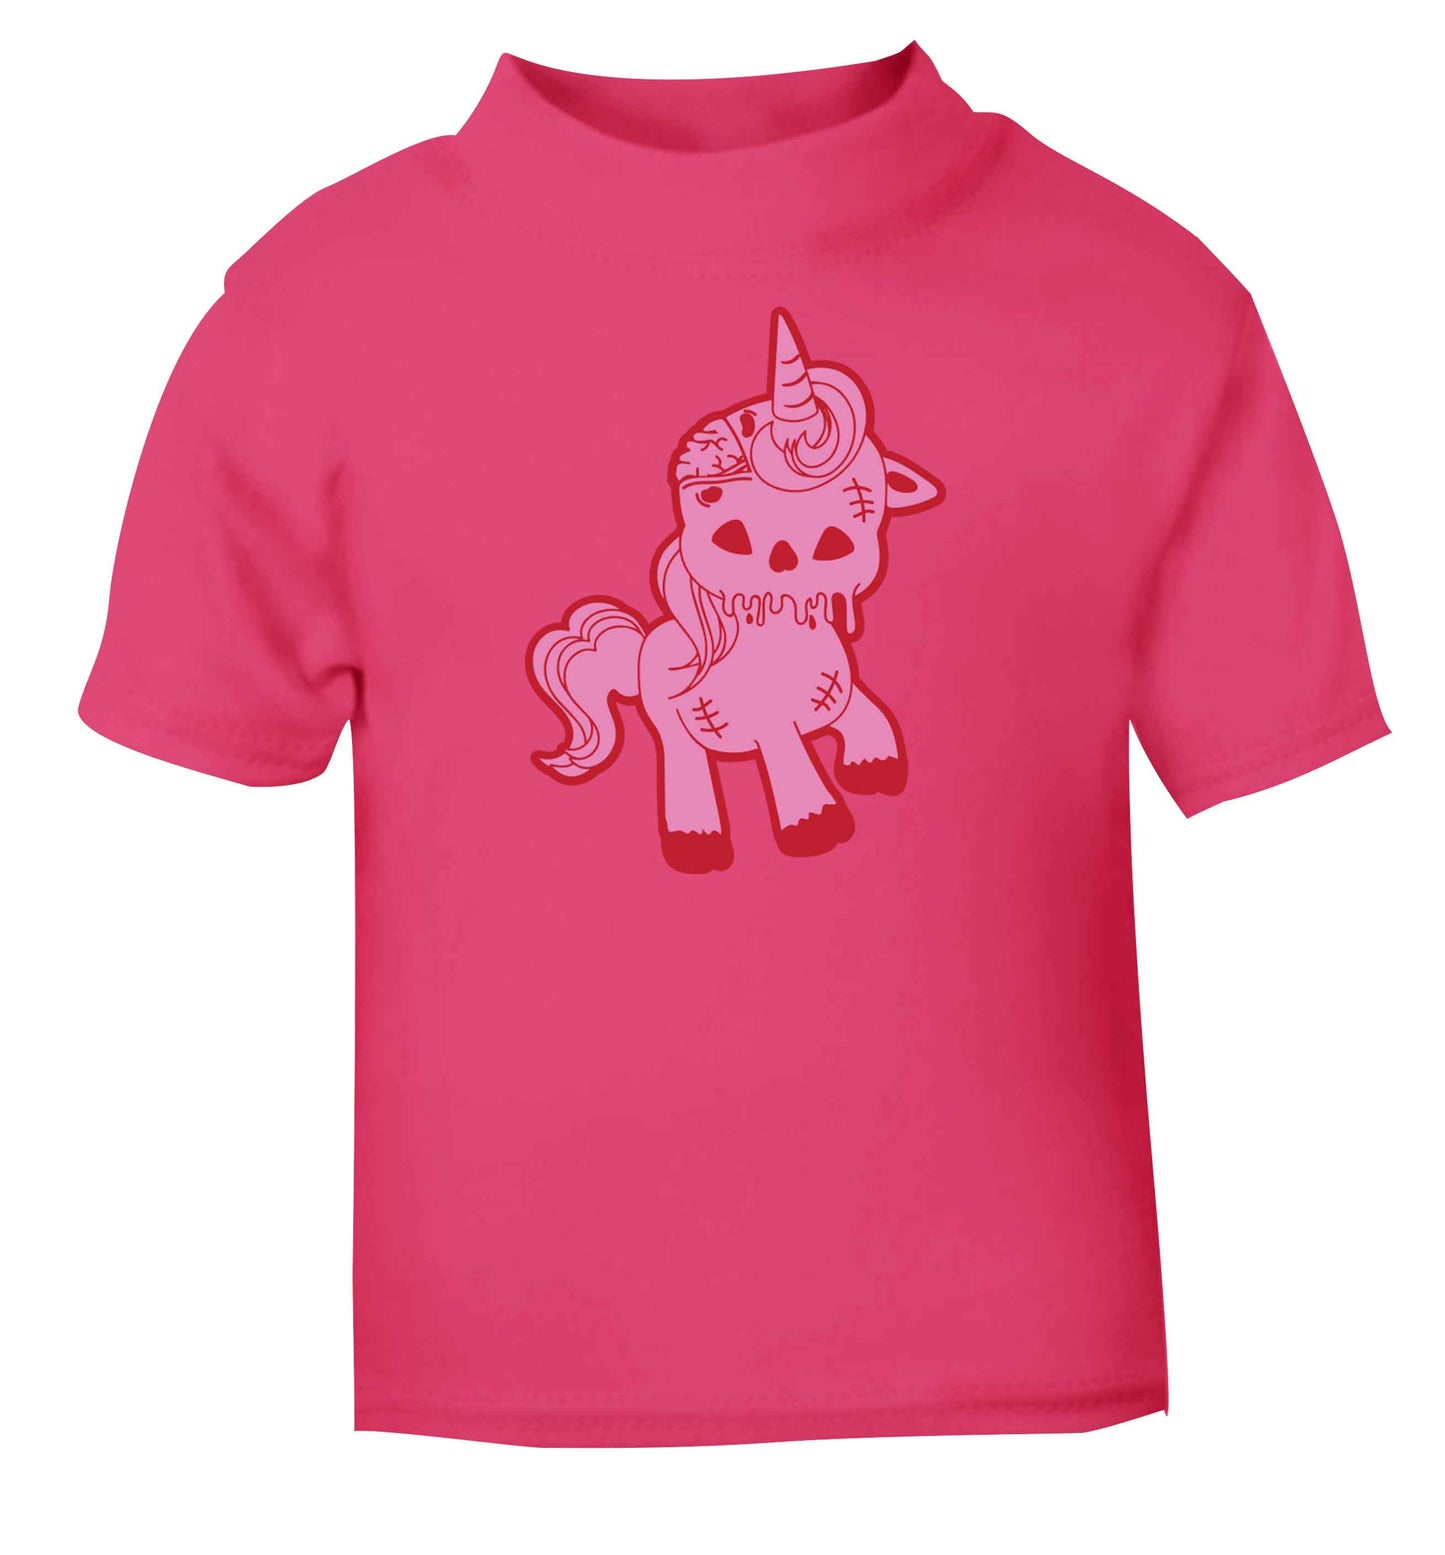 Zombie unicorn zombiecorn pink baby toddler Tshirt 2 Years